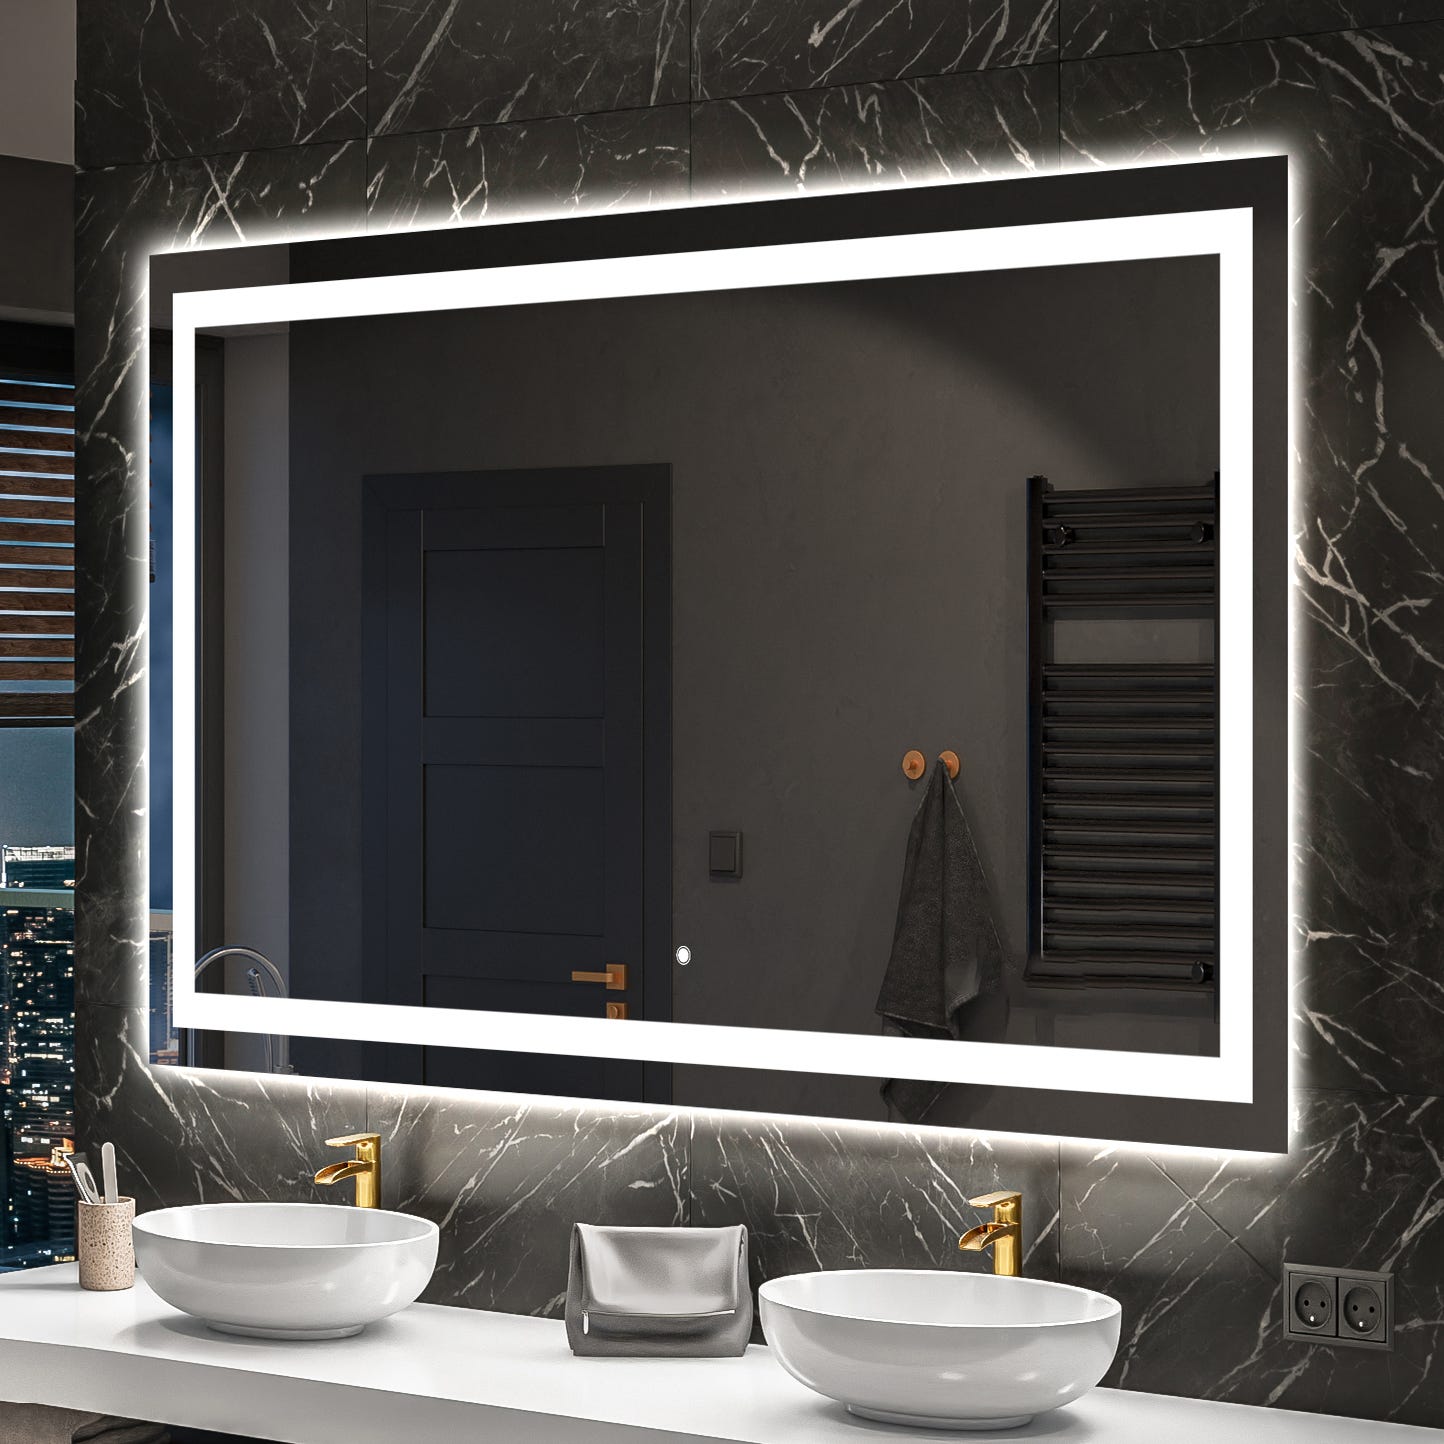 Miroir salle de bain avec eclairage LED - 50x70cm - GO LED